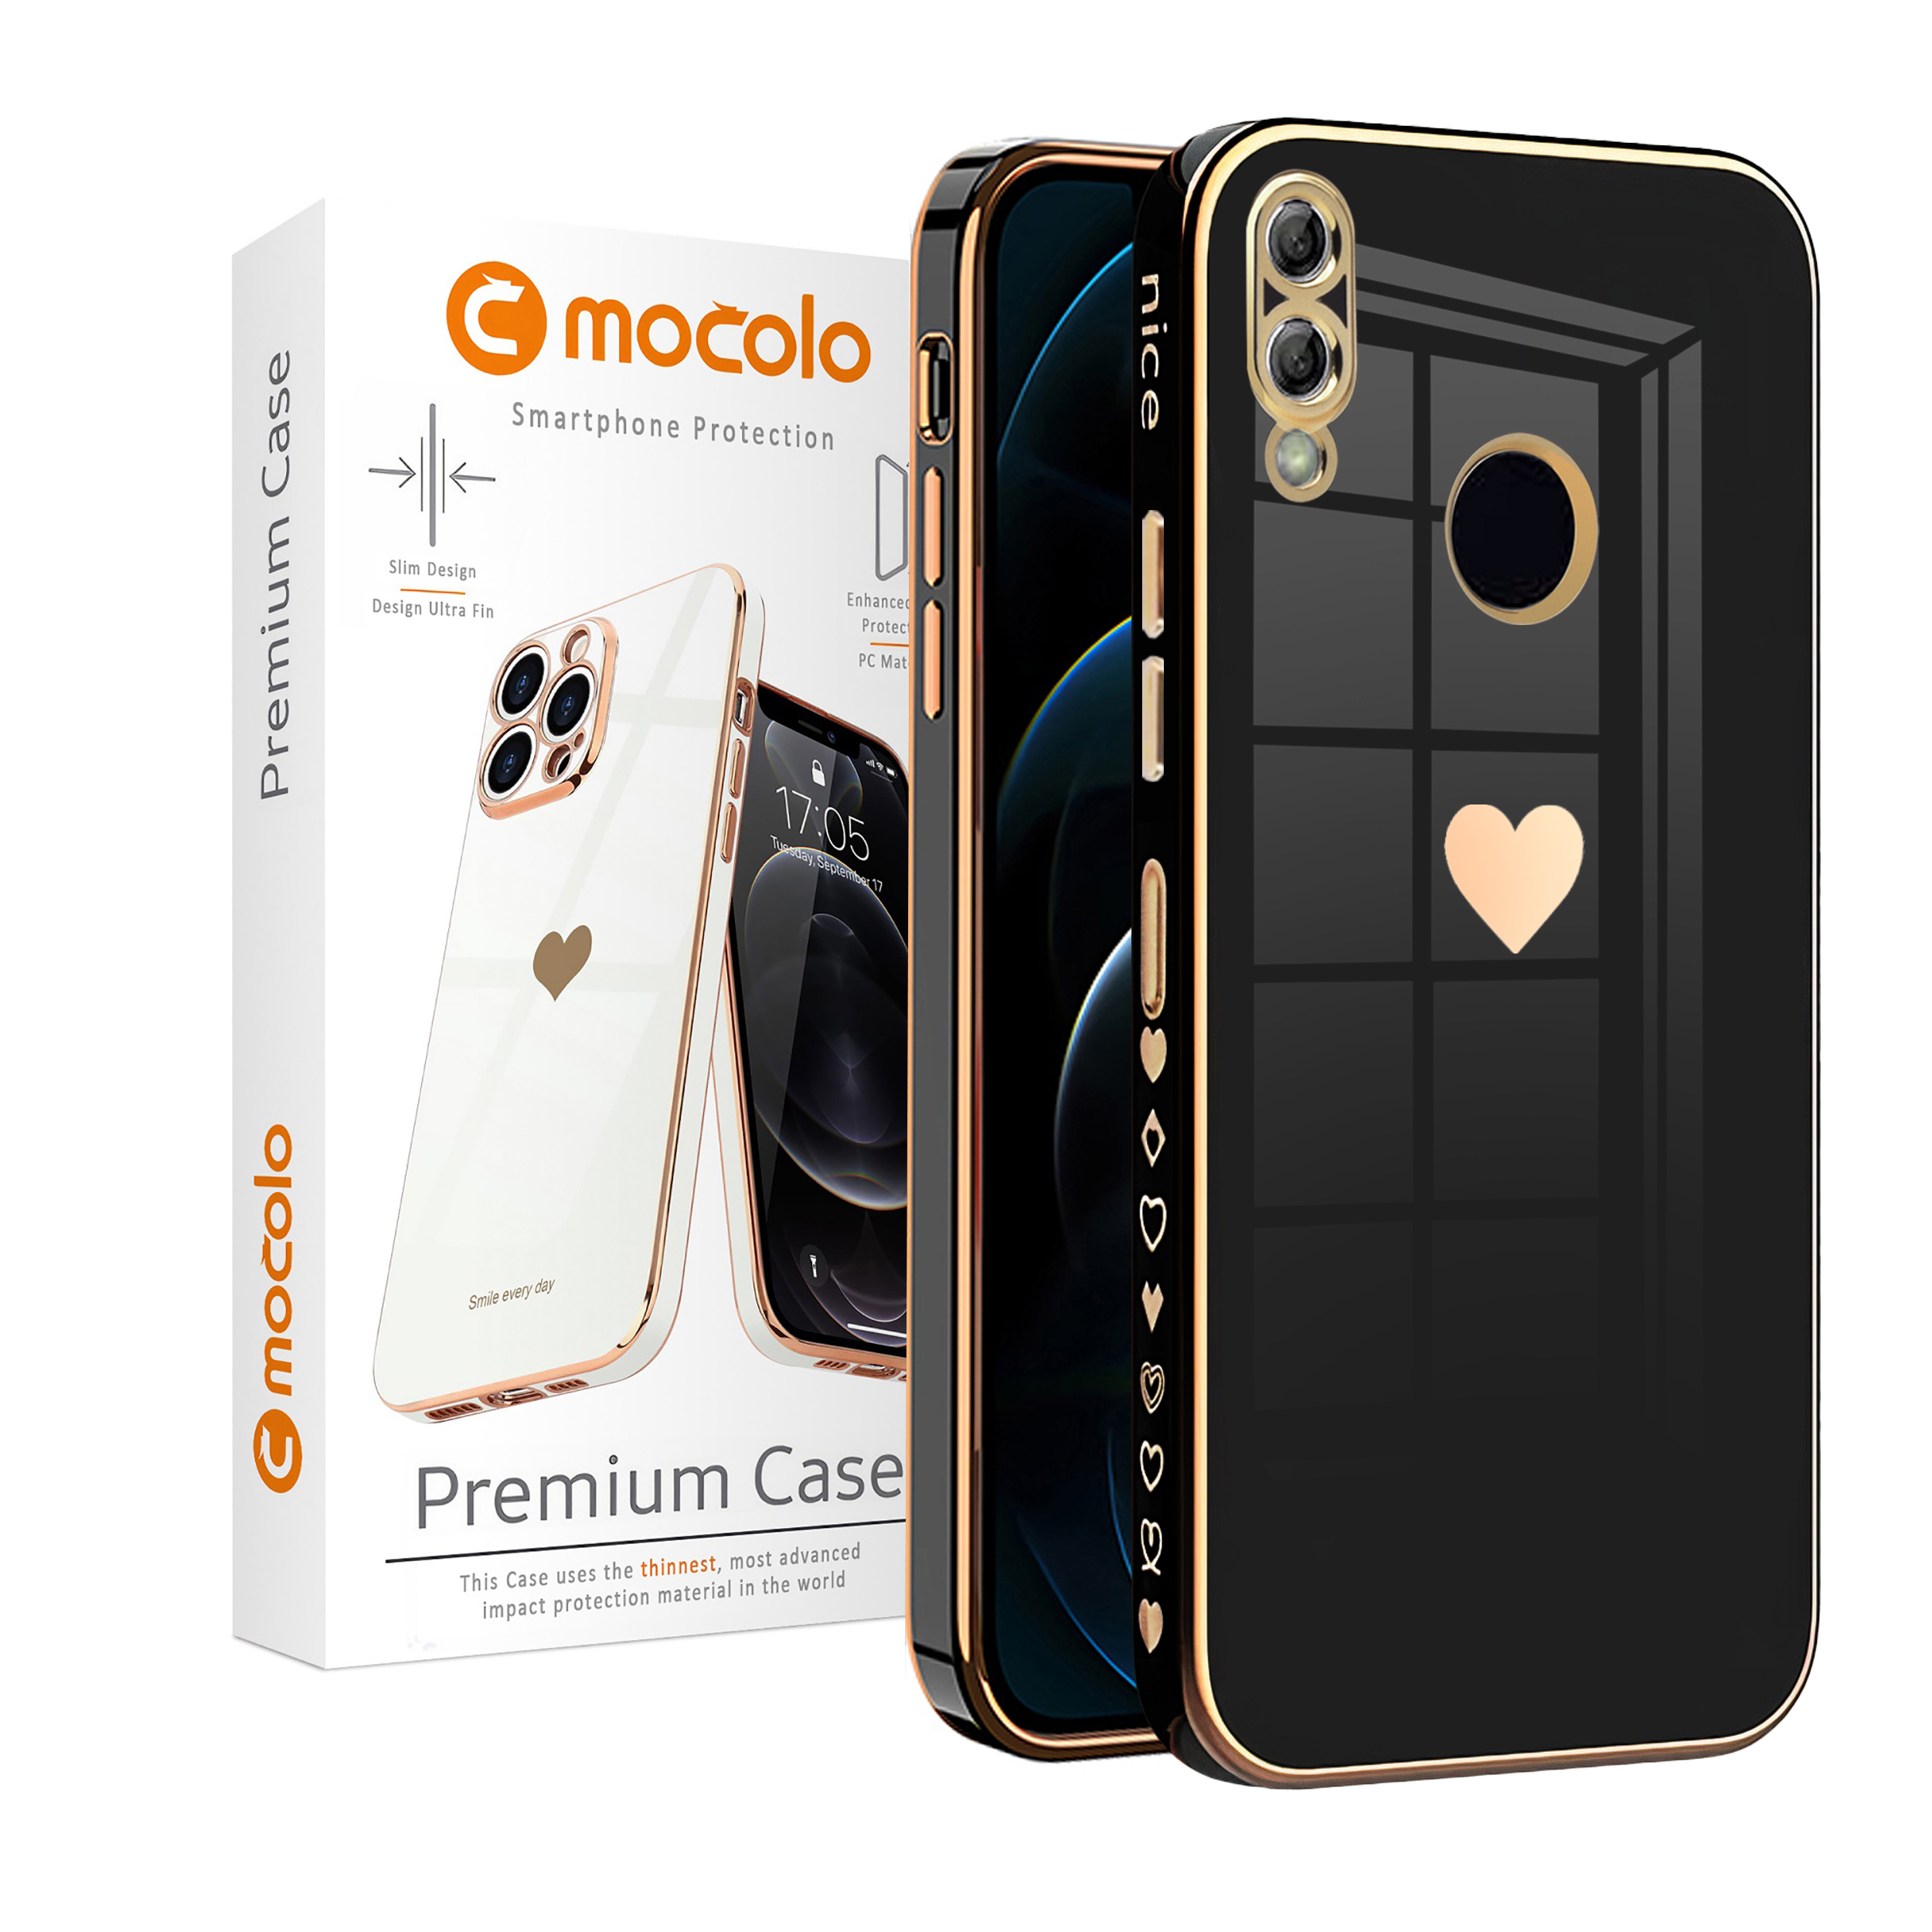 کاور موکولو مدل Baby مناسب برای گوشی موبایل هوآوی Y7 Prime 2019 به همراه پایه نگهدارنده